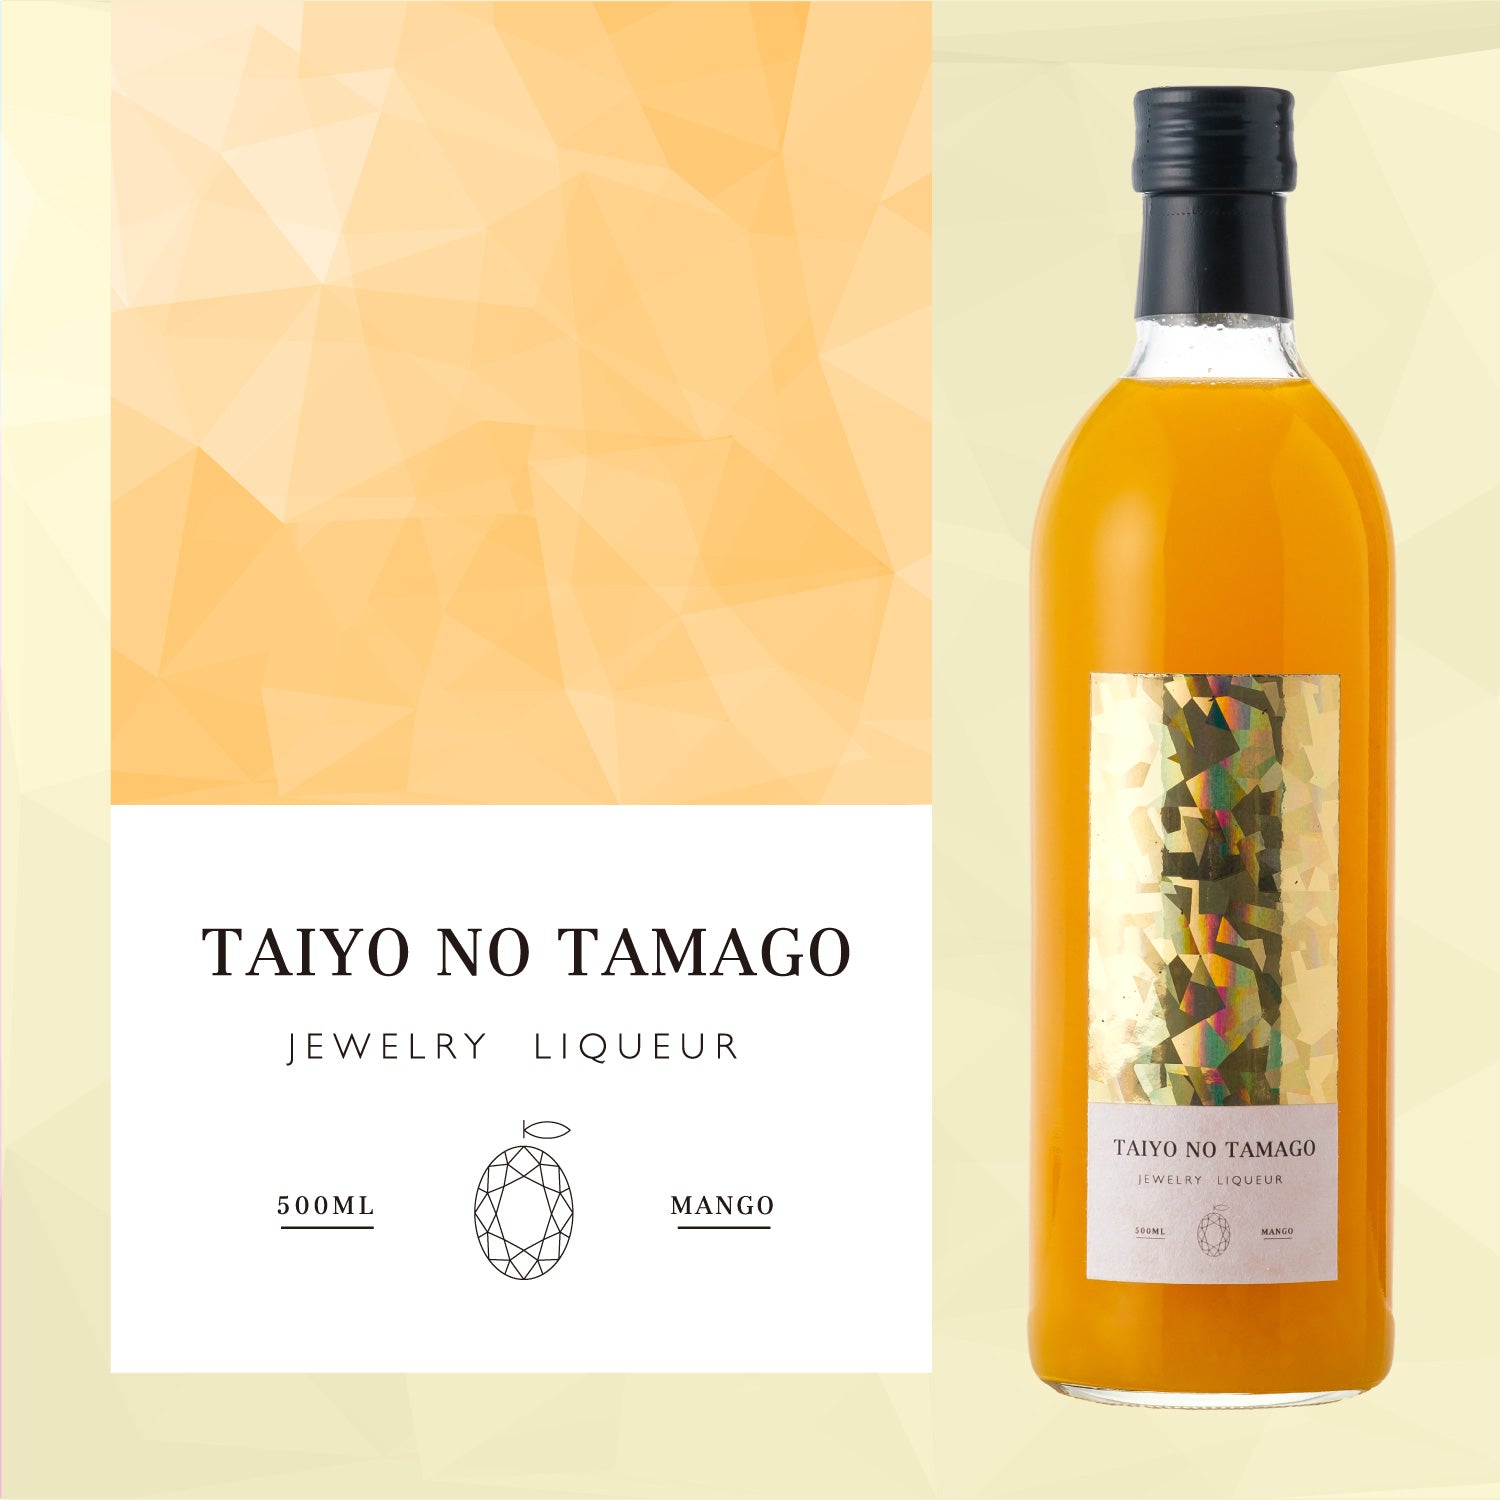 Taiyo no Tamago